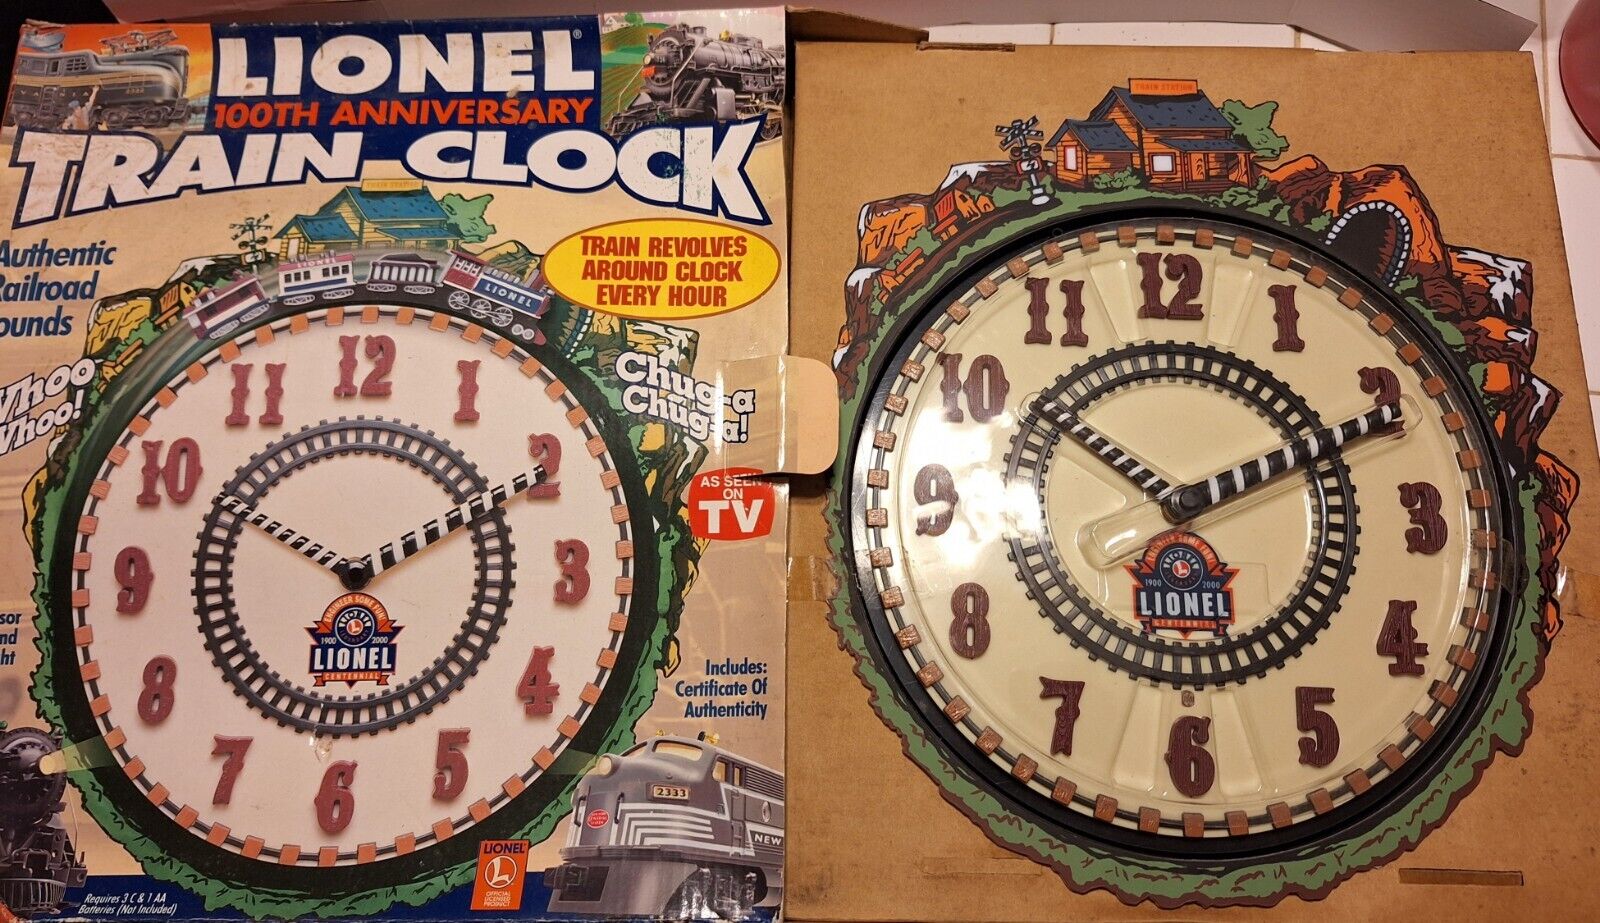 Lionel 100th Anniversary Train Clock - New in Box